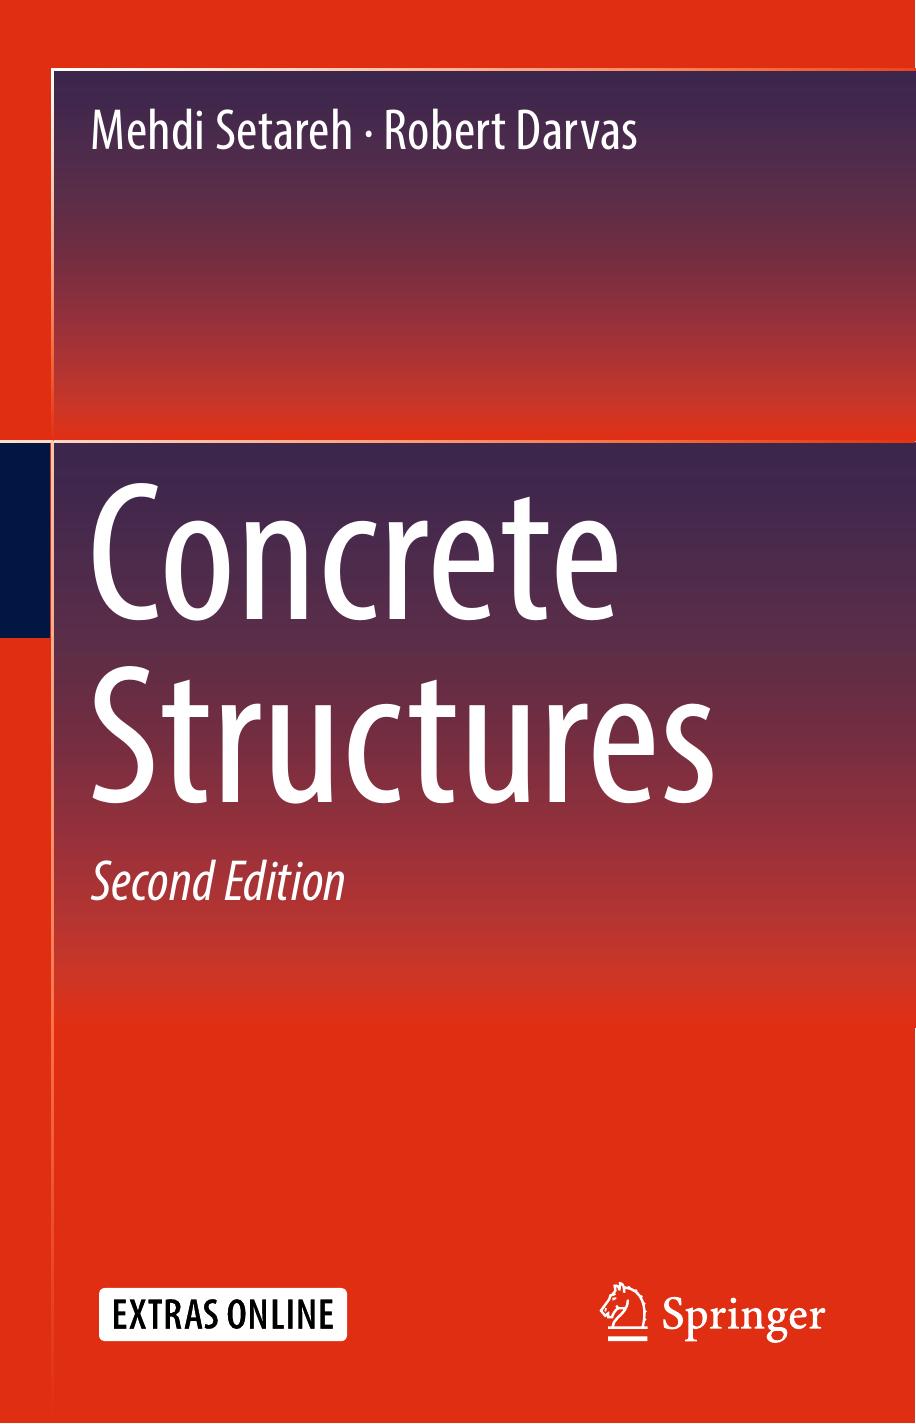 Concrete Structures ( PDFDrive.com )